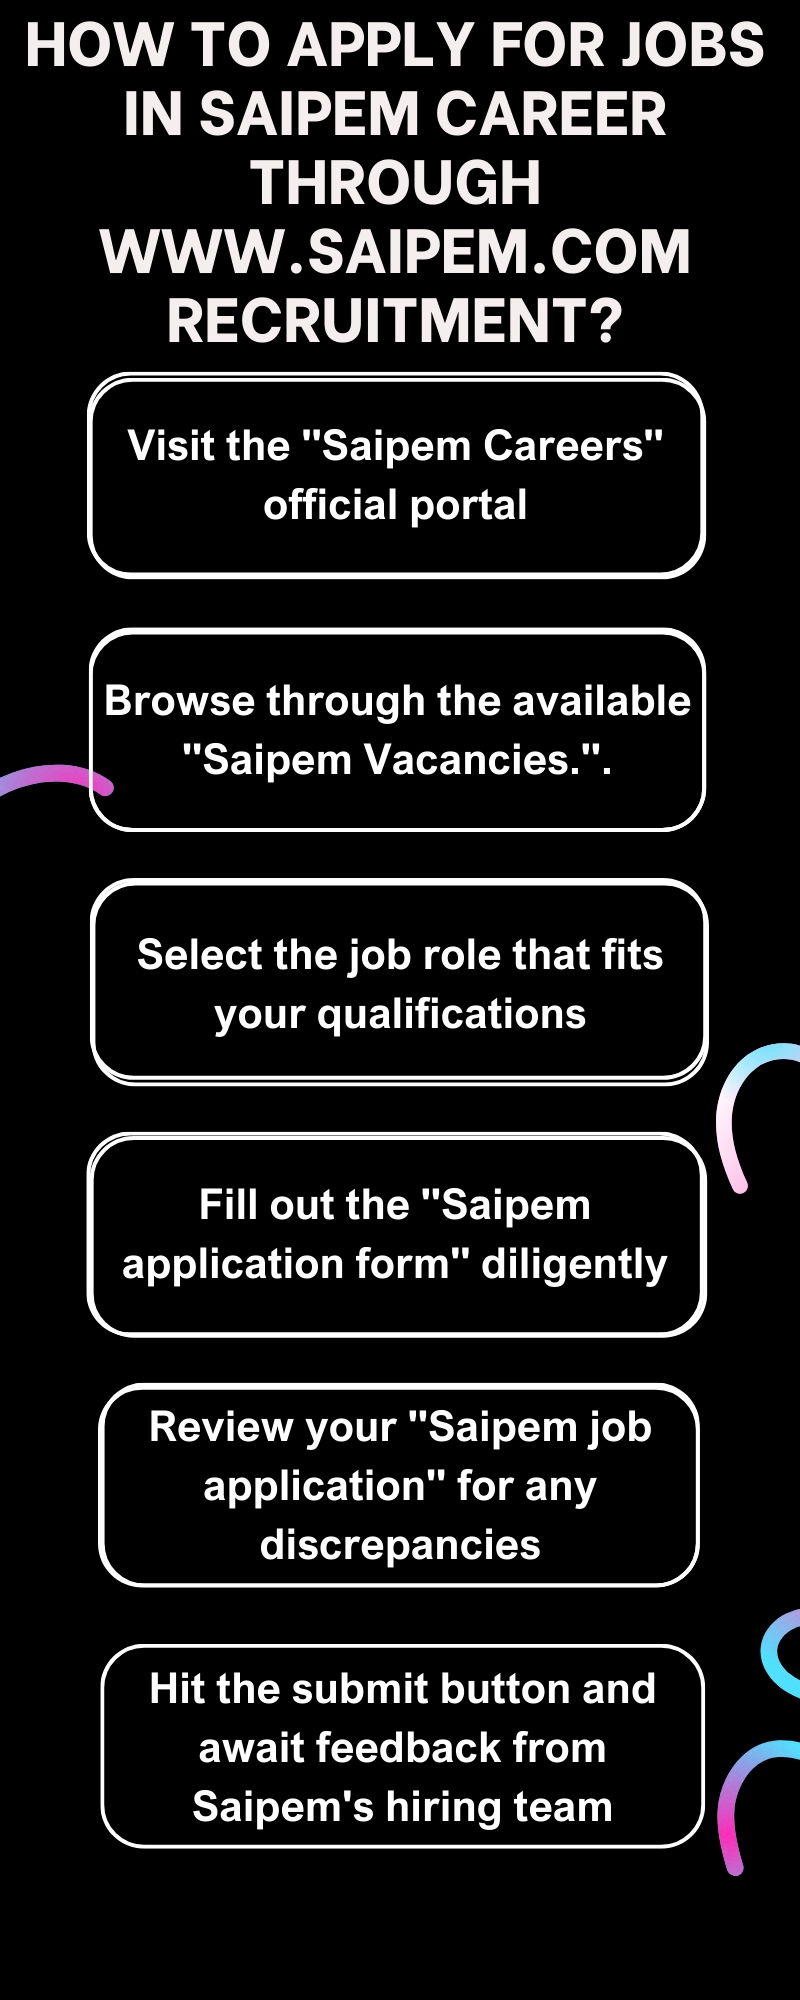 How to Apply for Jobs in Saipem Career through www.saipem.com recruitment?